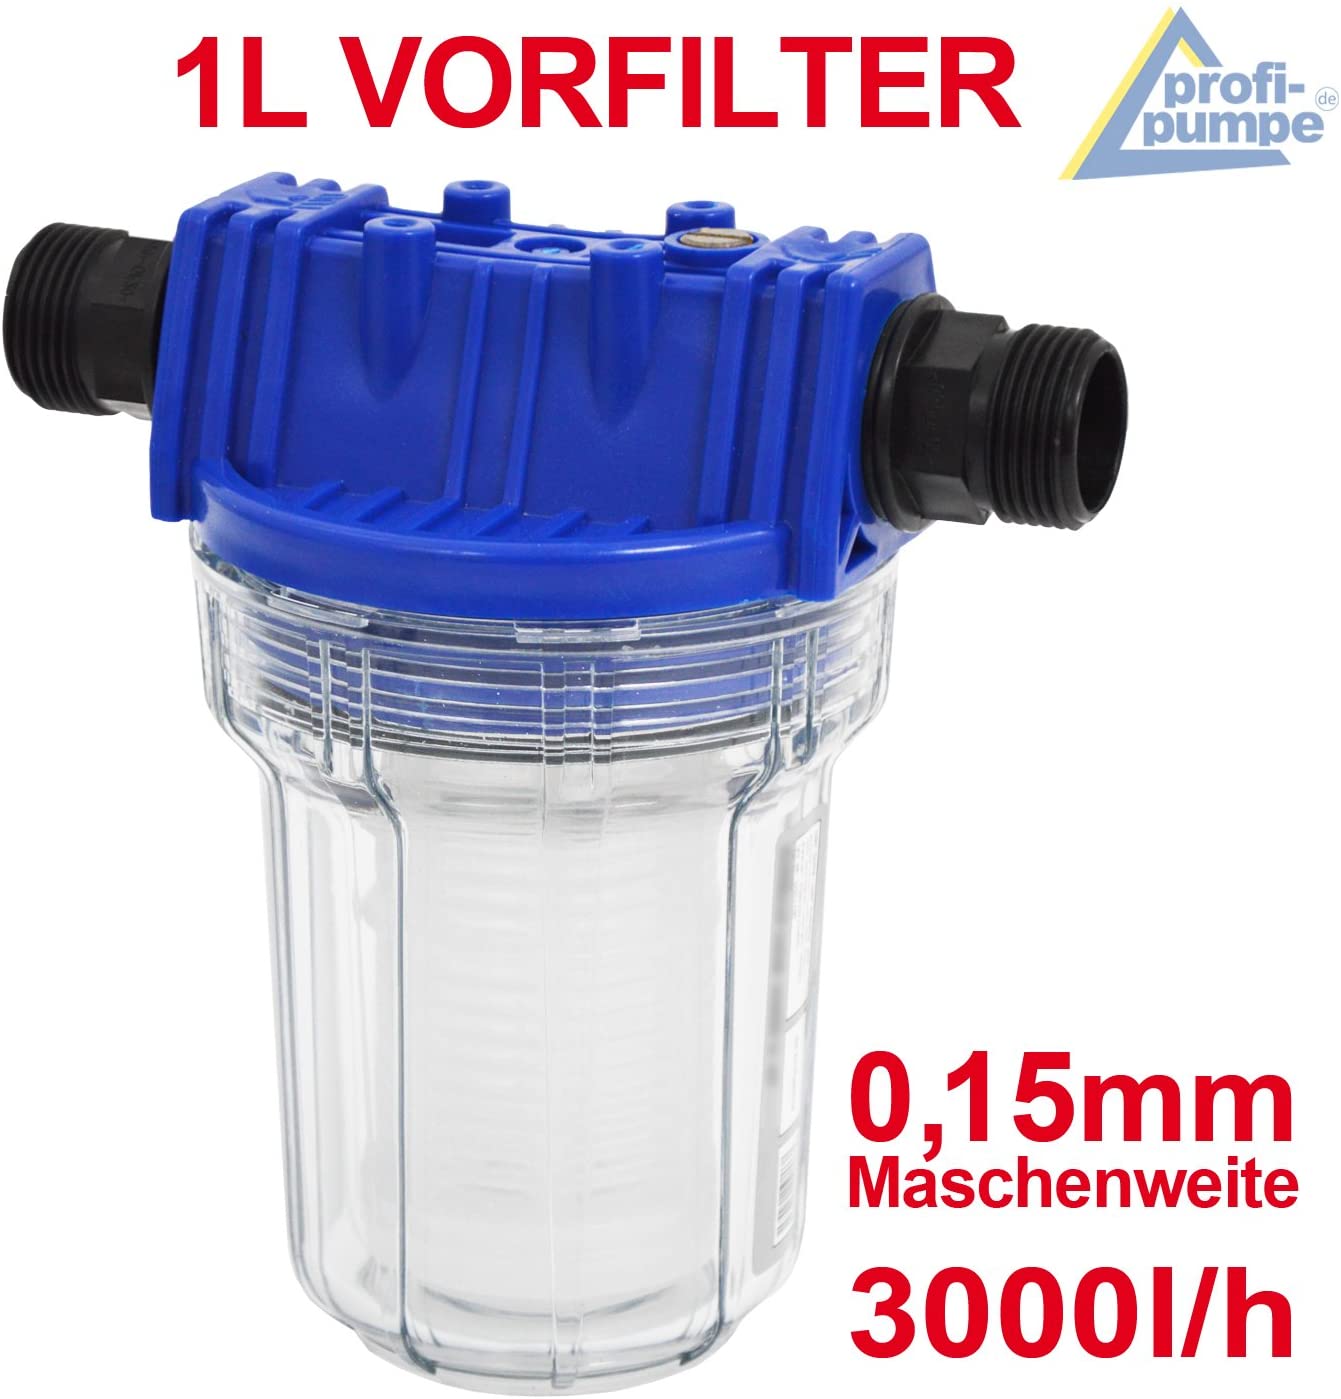 AWM 2L Vorfilter Hauswasserwerk Wasserfilter 3000 l/h Pumpenfilter max 4 bar 